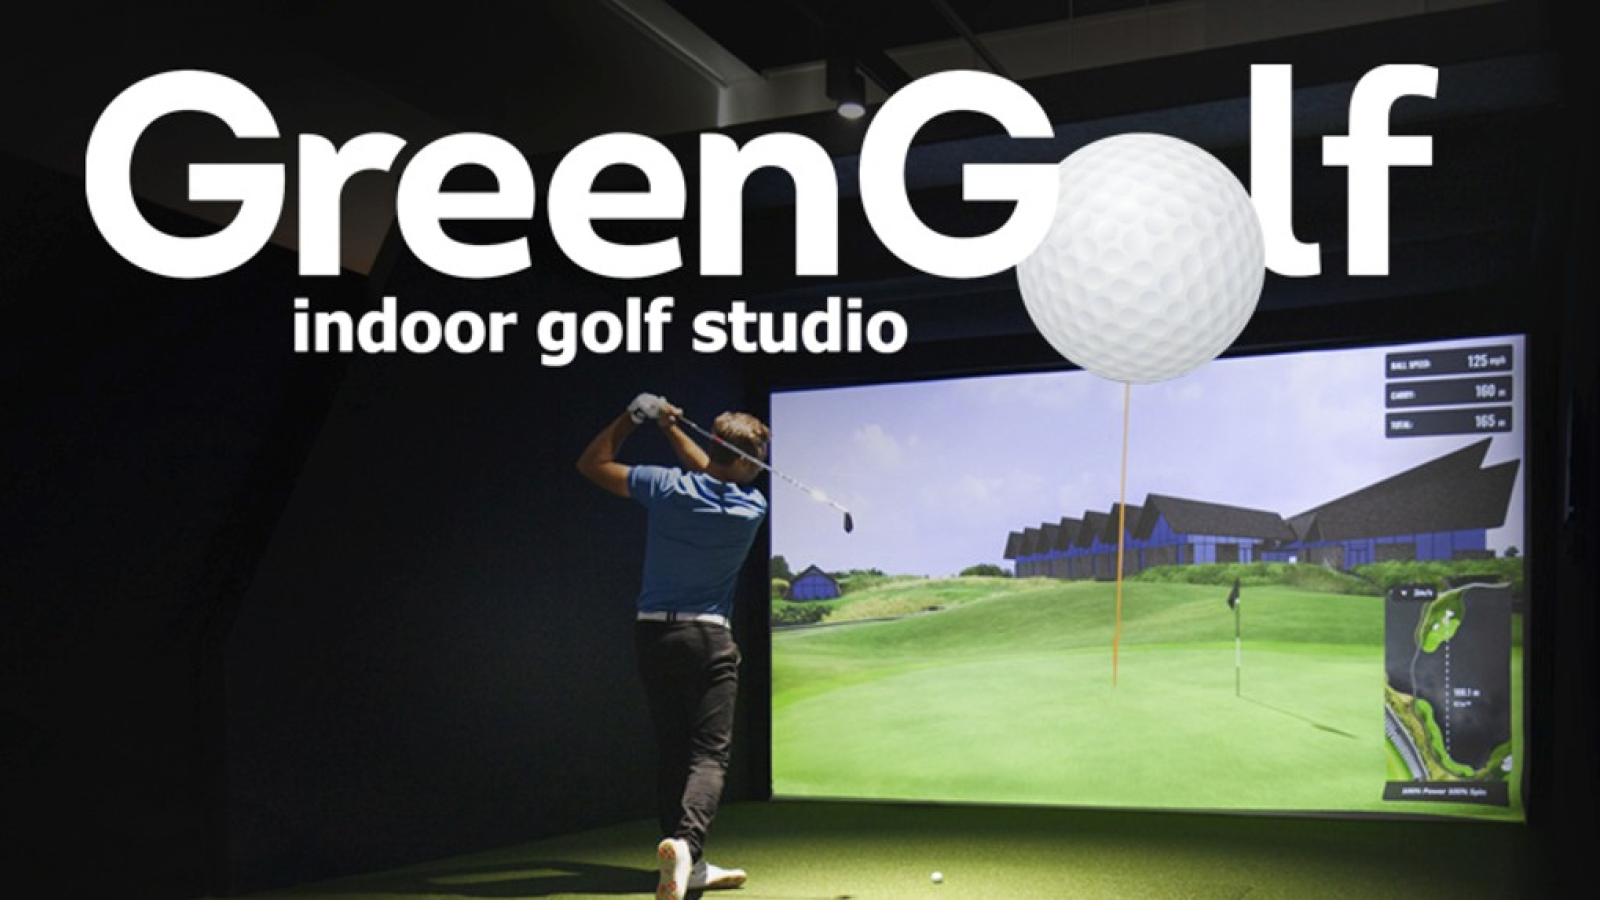 Green Golf indoor golf studio